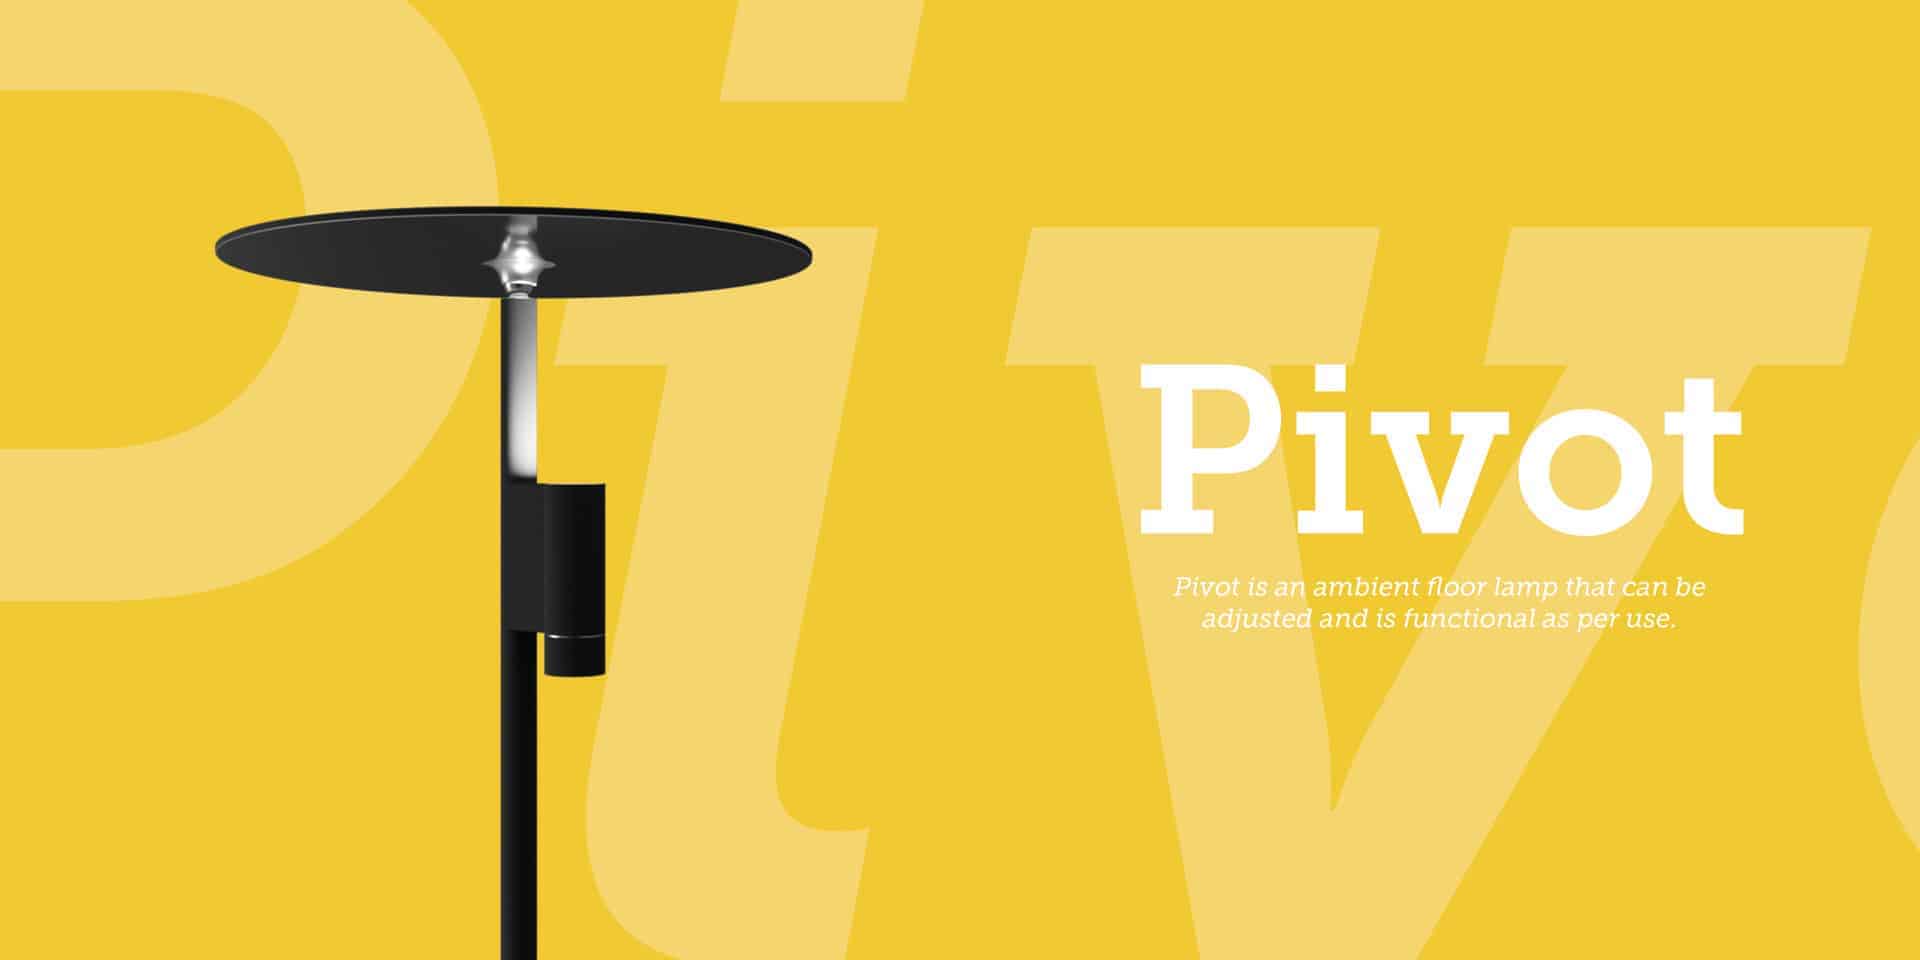 Pivot - A versatile ambient light.